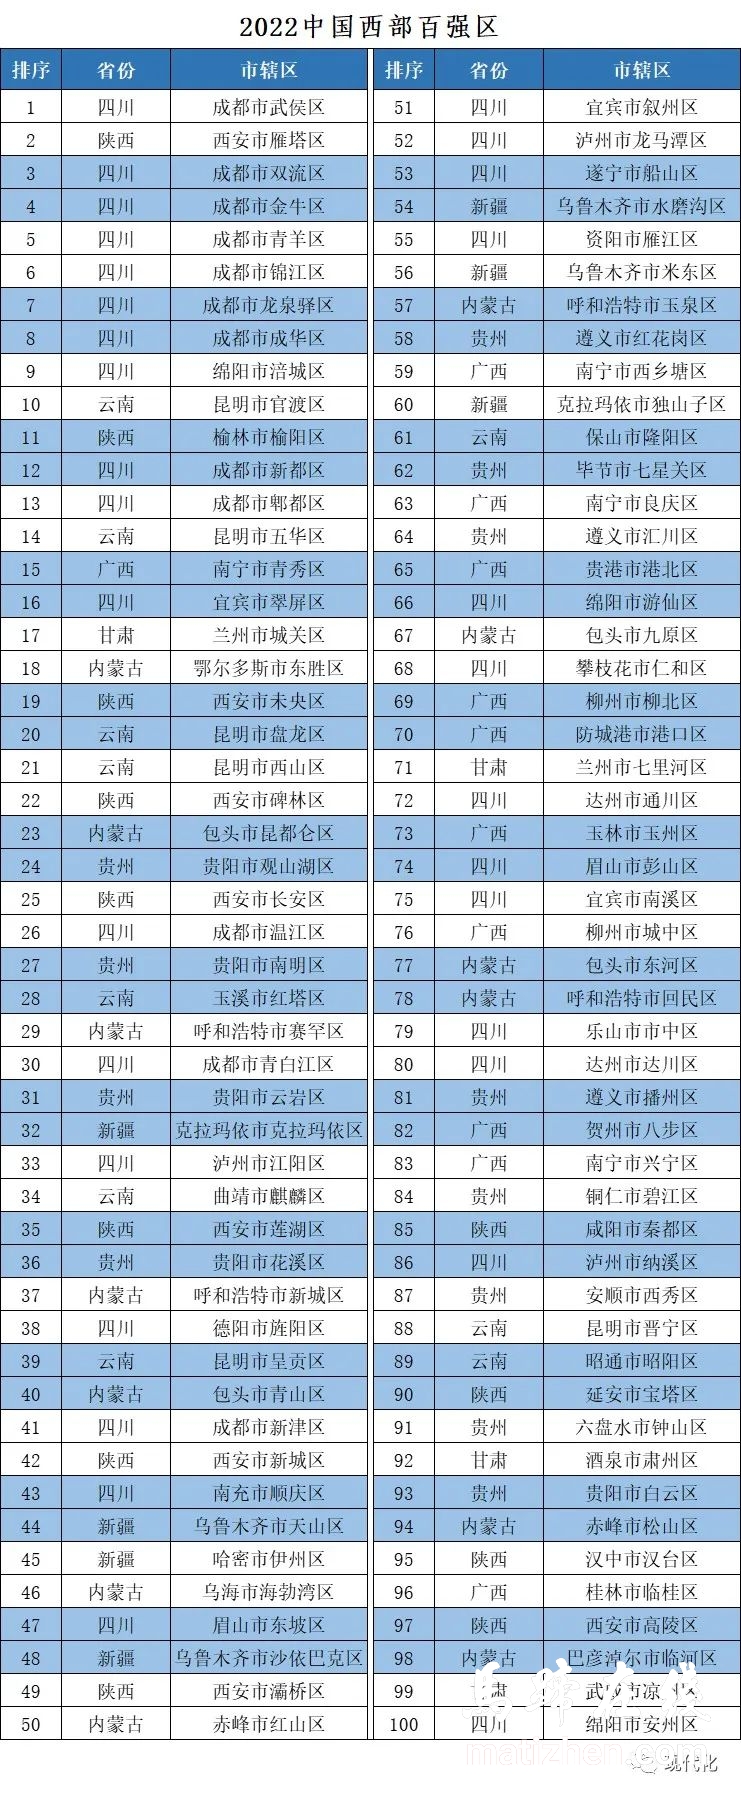 古蔺县进入2022中国西部百强县名单插图2